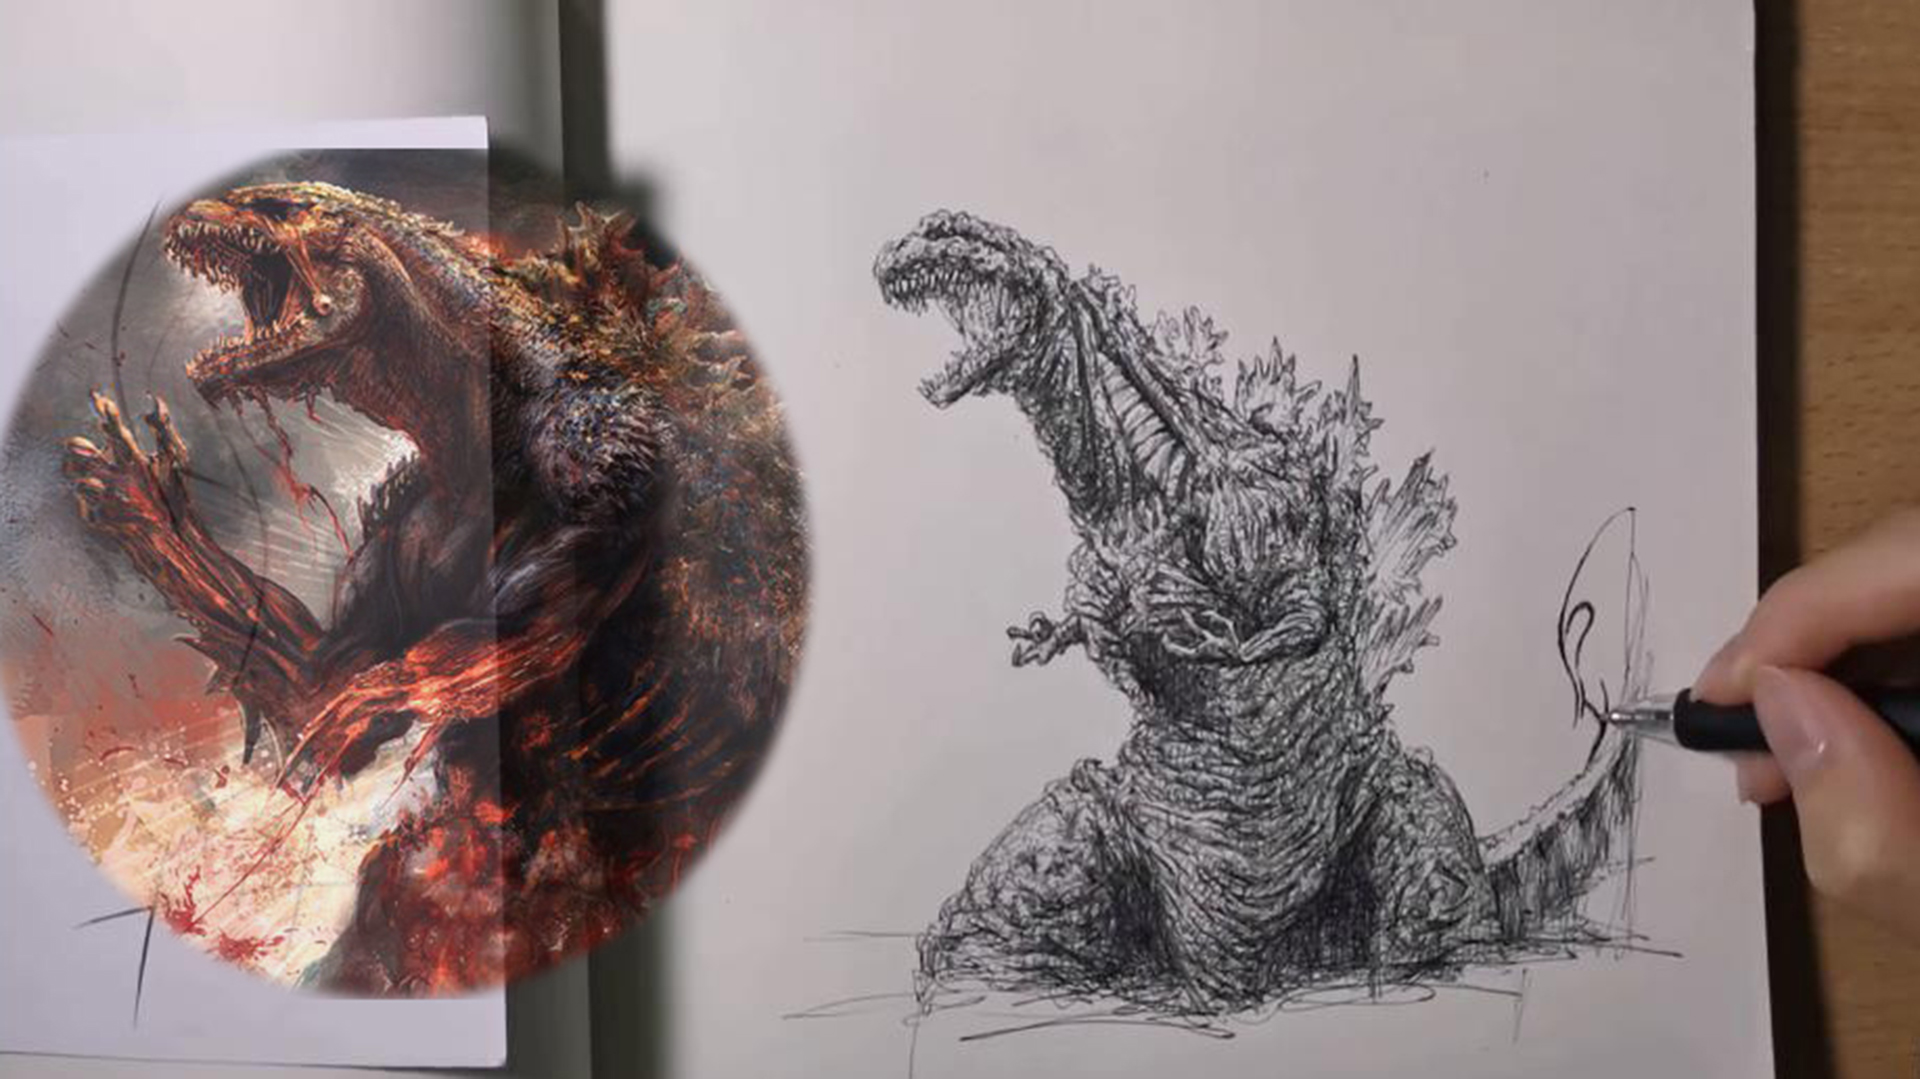 Nếu bạn là fan của loài quái vật nổi tiếng - Godzilla, thì hãy xem ngay video về cách vẽ con Godzilla với một cây bút! Dù bạn là người mới bắt đầu hay là người đã có kinh nghiệm, những mẹo vẽ chi tiết trong video này chắc chắn sẽ giúp bạn tạo ra một siêu quái vật đẹp mắt và đầy sức mạnh. Hãy cùng khám phá ngay bây giờ!